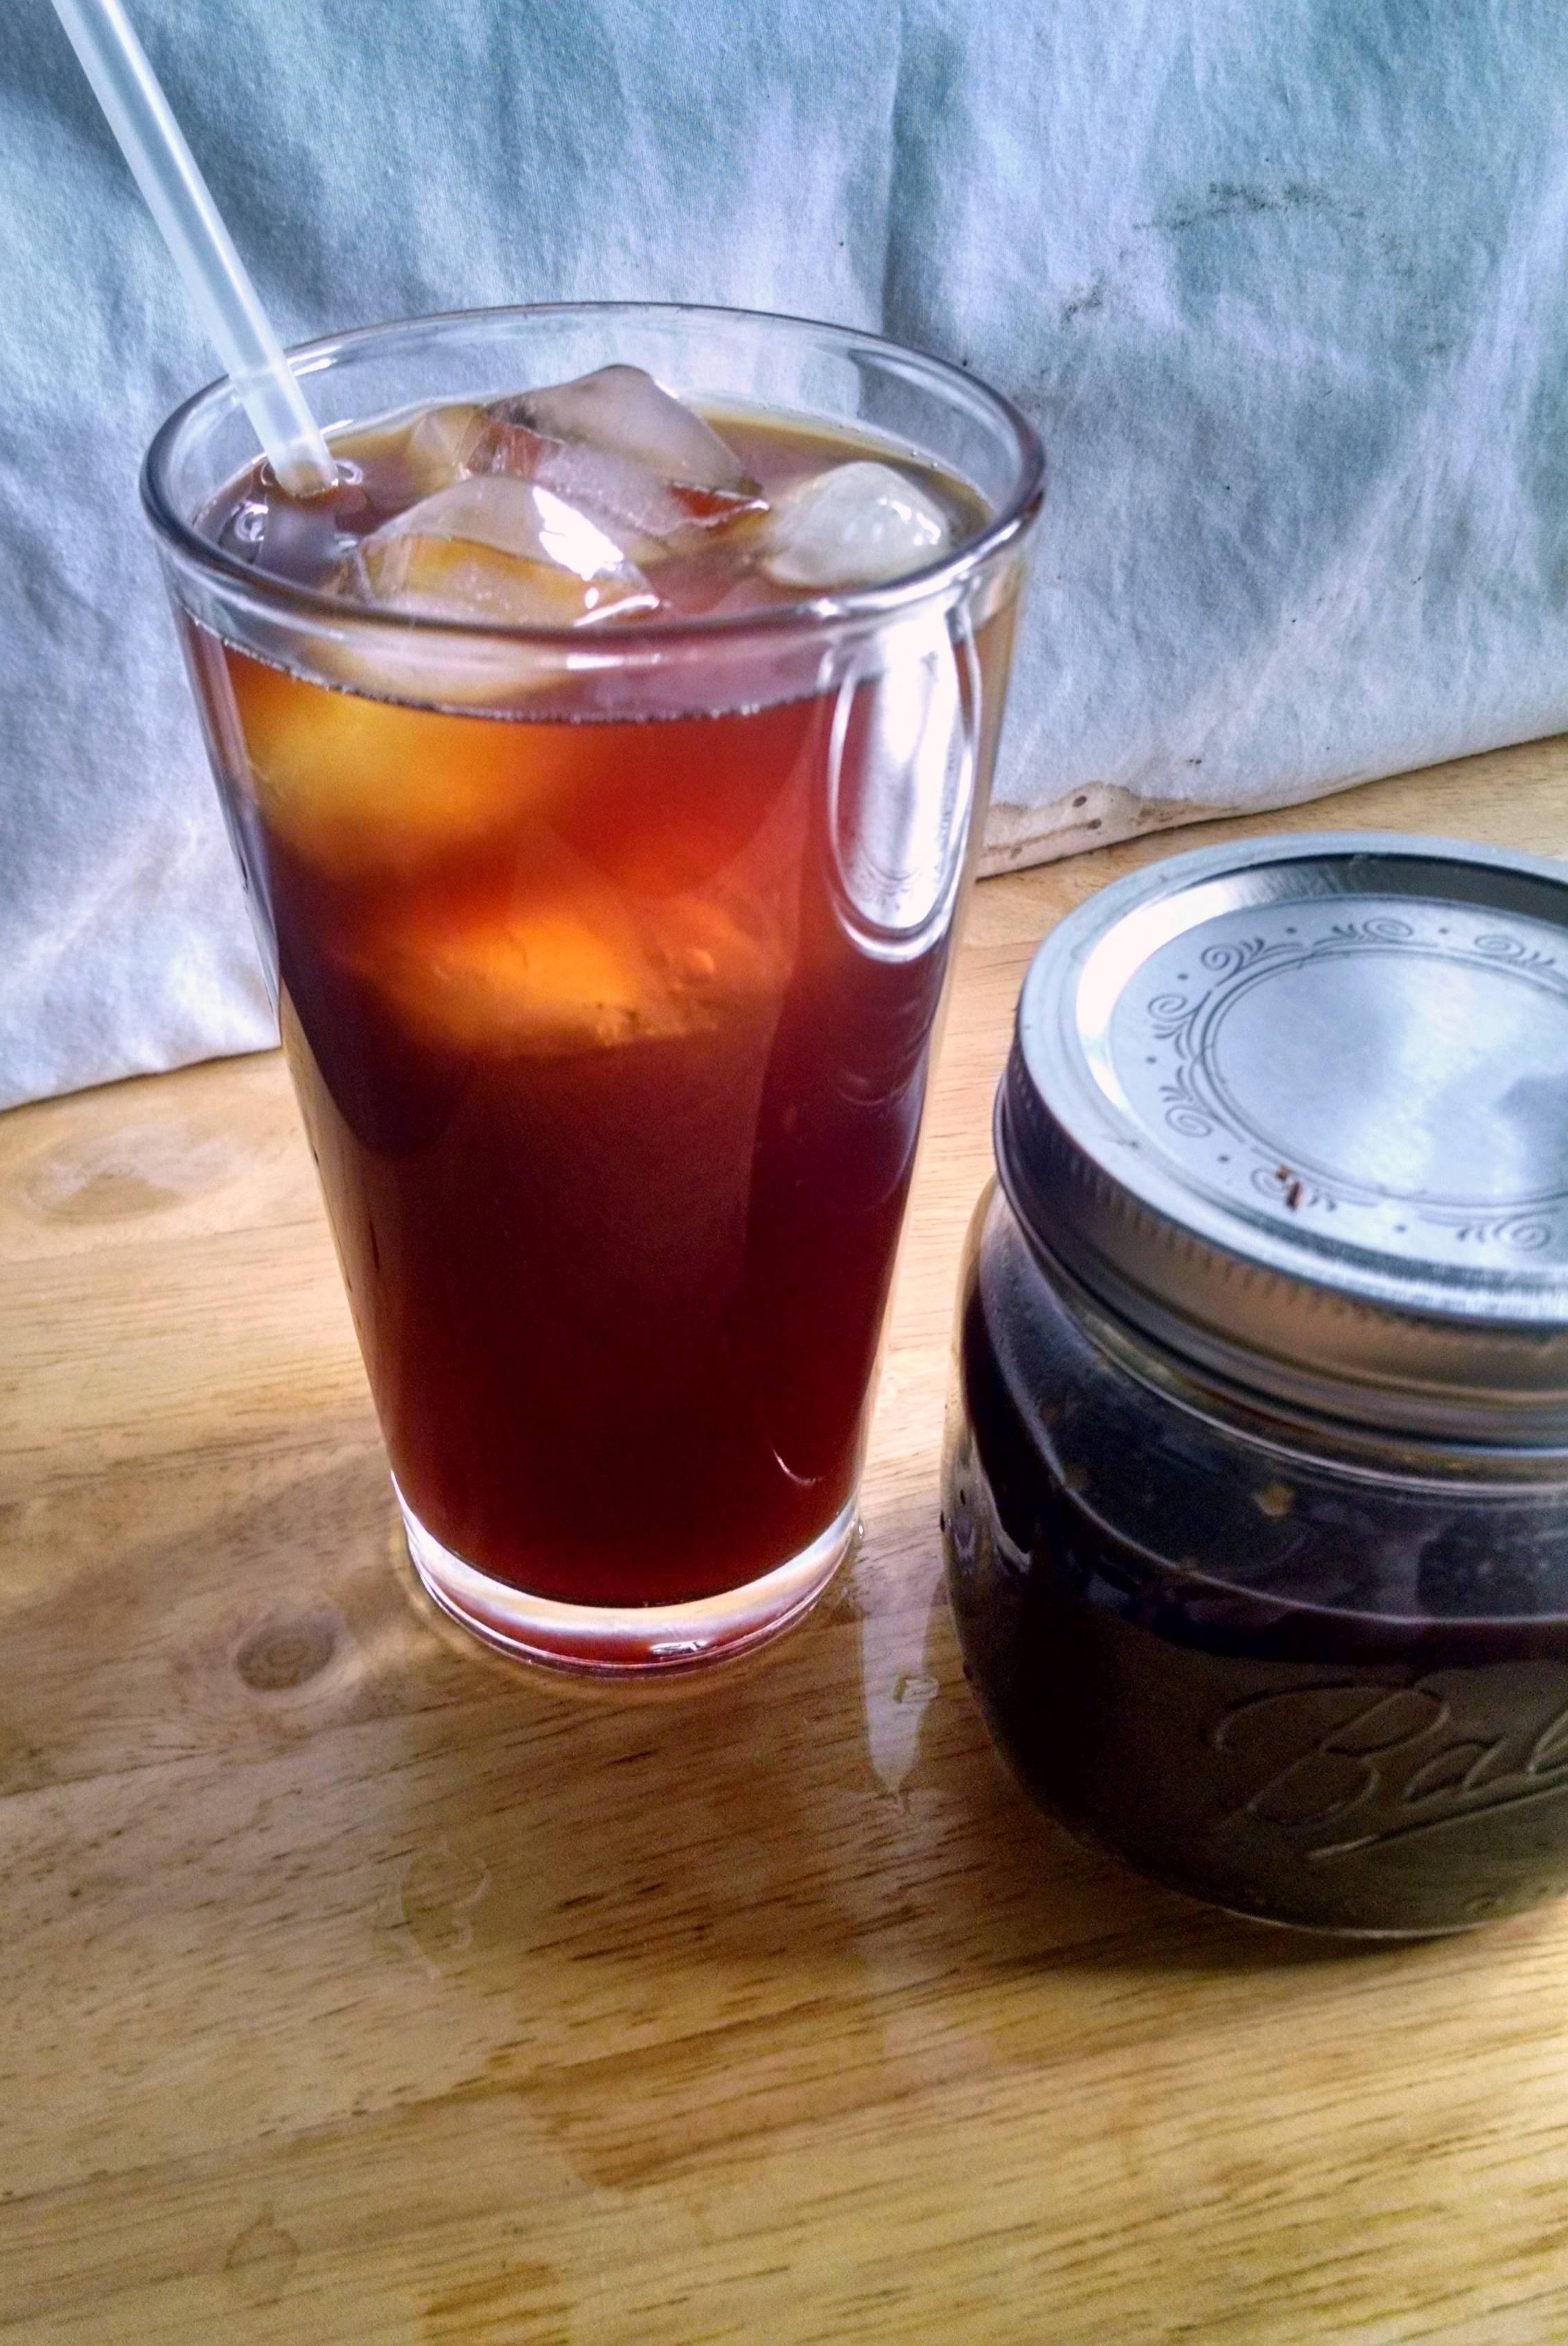 Redo cold brew coffee: приучить россиян к холодному кофе с помощью бесплатных шотов и артемия лебедева